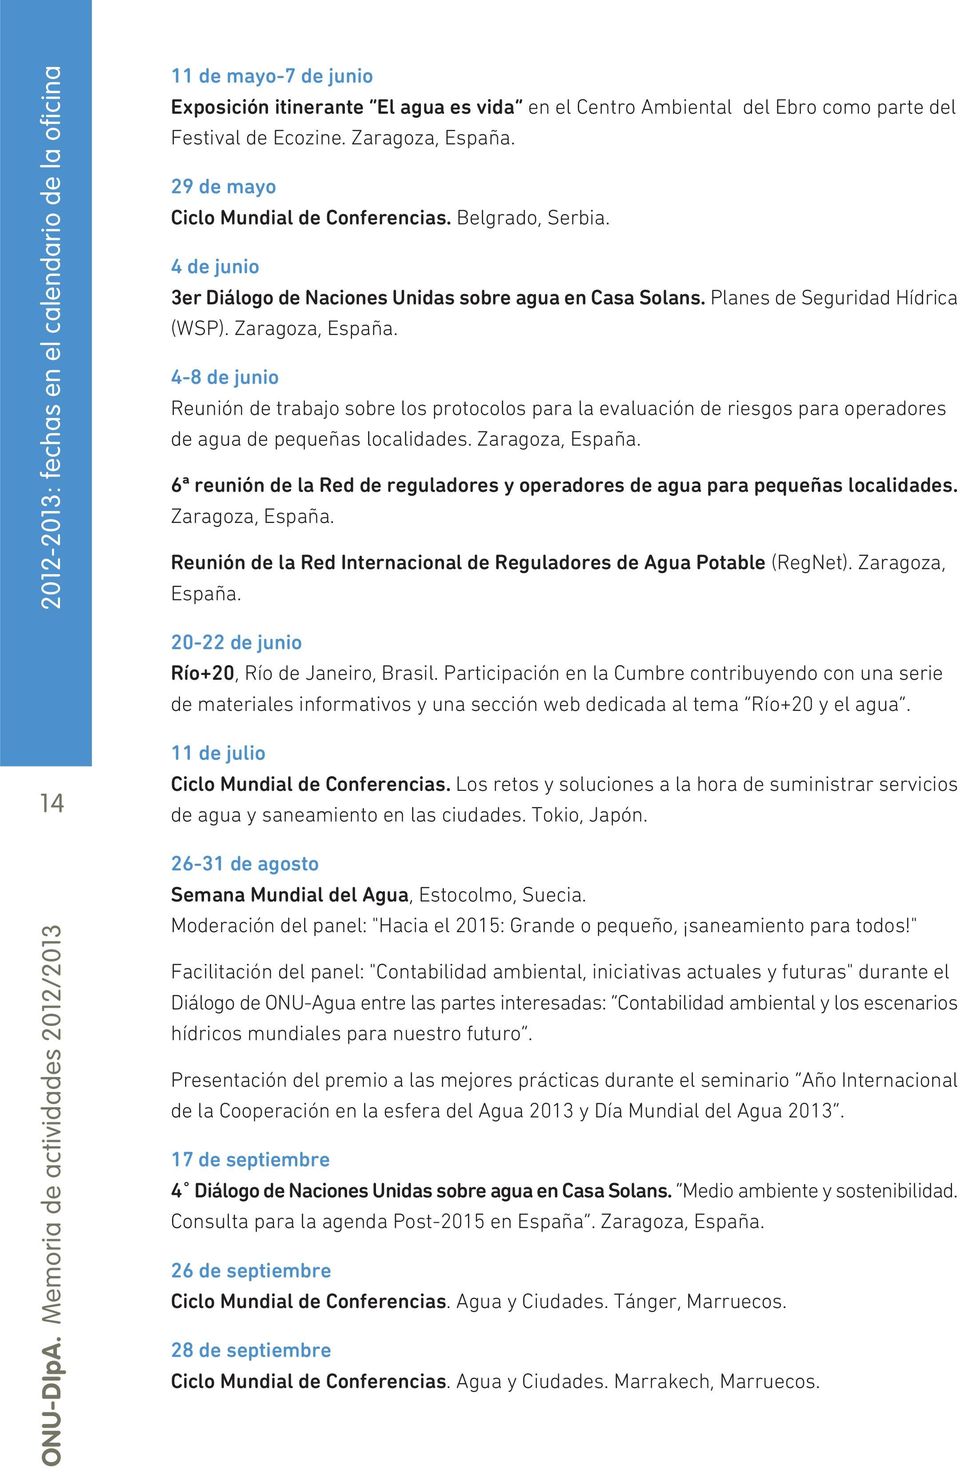 4-8 de junio Reunión de trabajo sobre los protocolos para la evaluación de riesgos para operadores de agua de pequeñas localidades. Zaragoza, España.